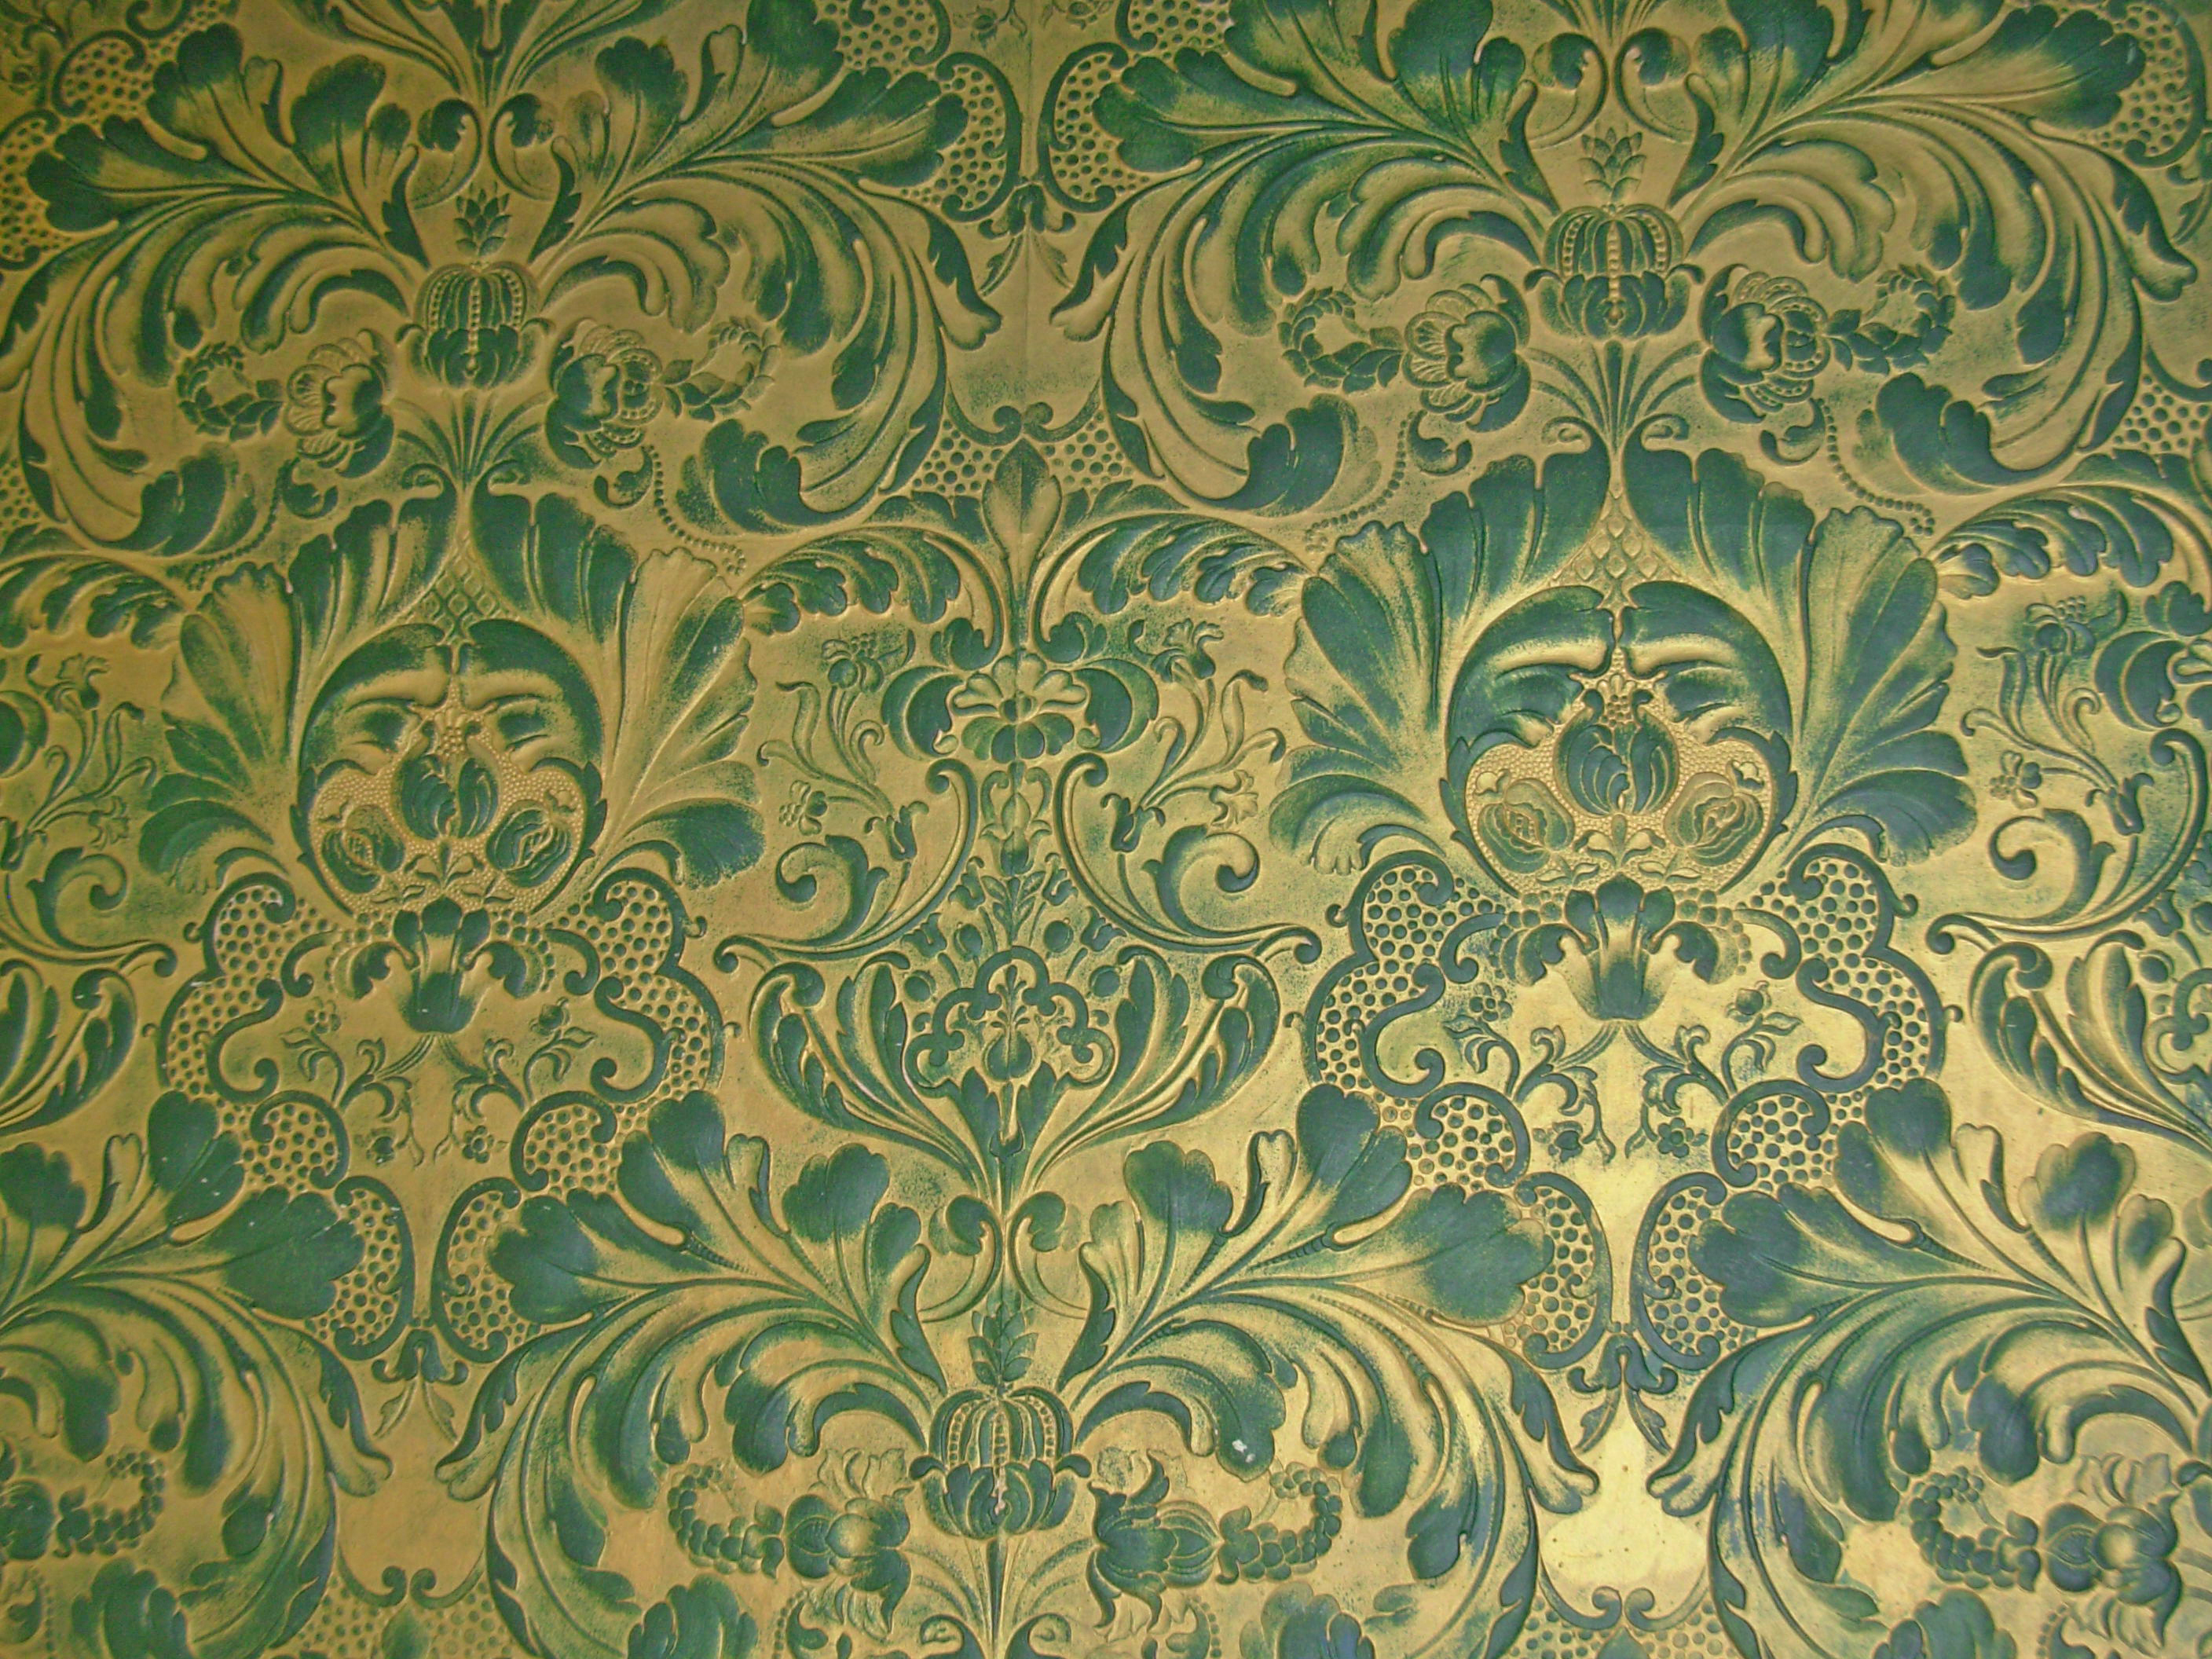 ビクトリア朝の壁紙,緑,パターン,壁紙,設計,視覚芸術